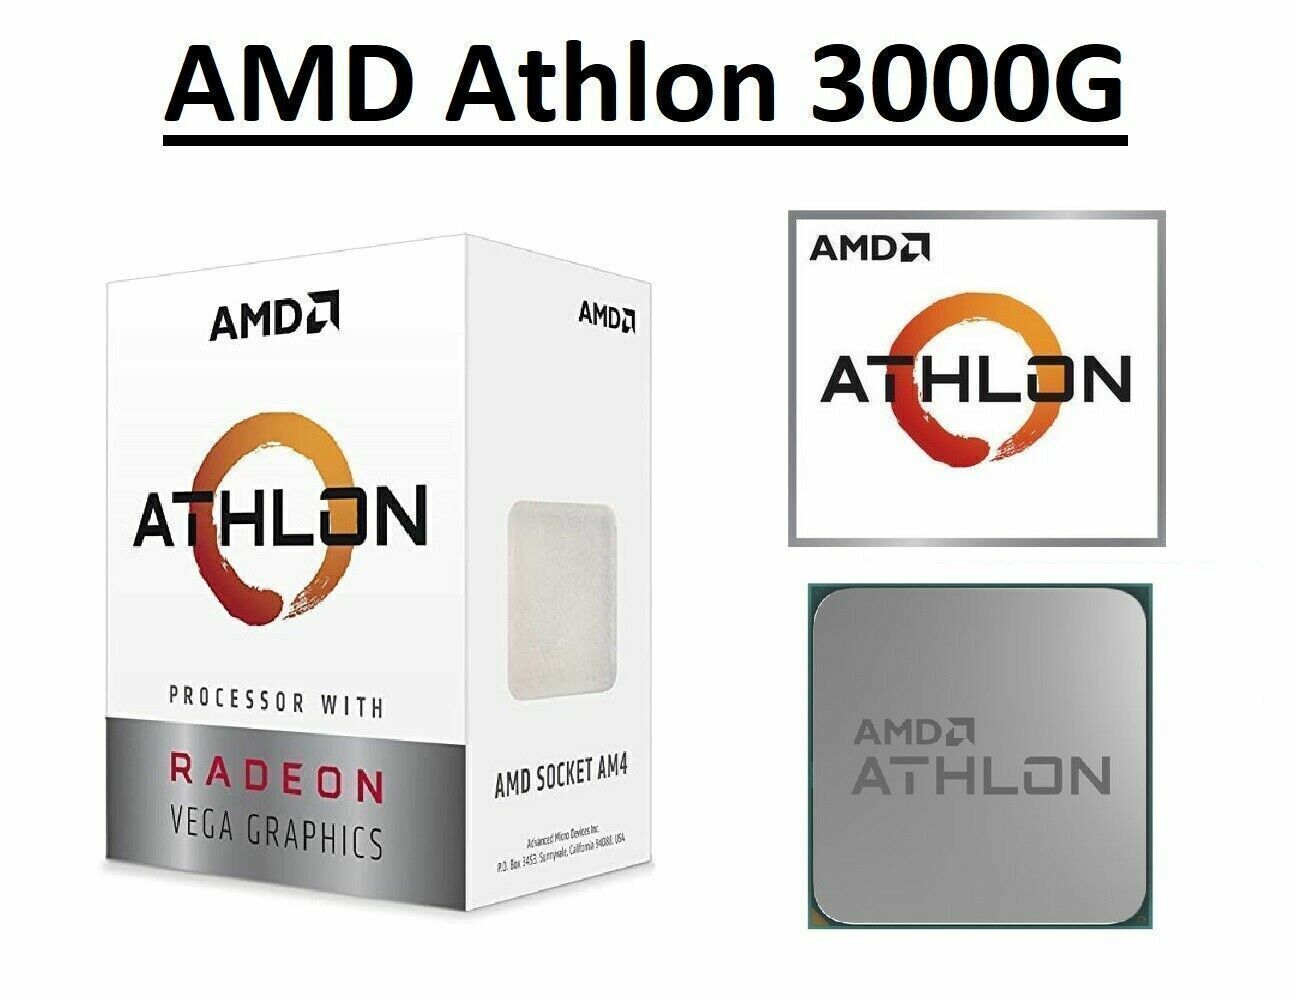 AMD Athlon 3000G Processor Radeon Graphics 2 Cores 4Threads 3.5GHz 2667MHz CPU